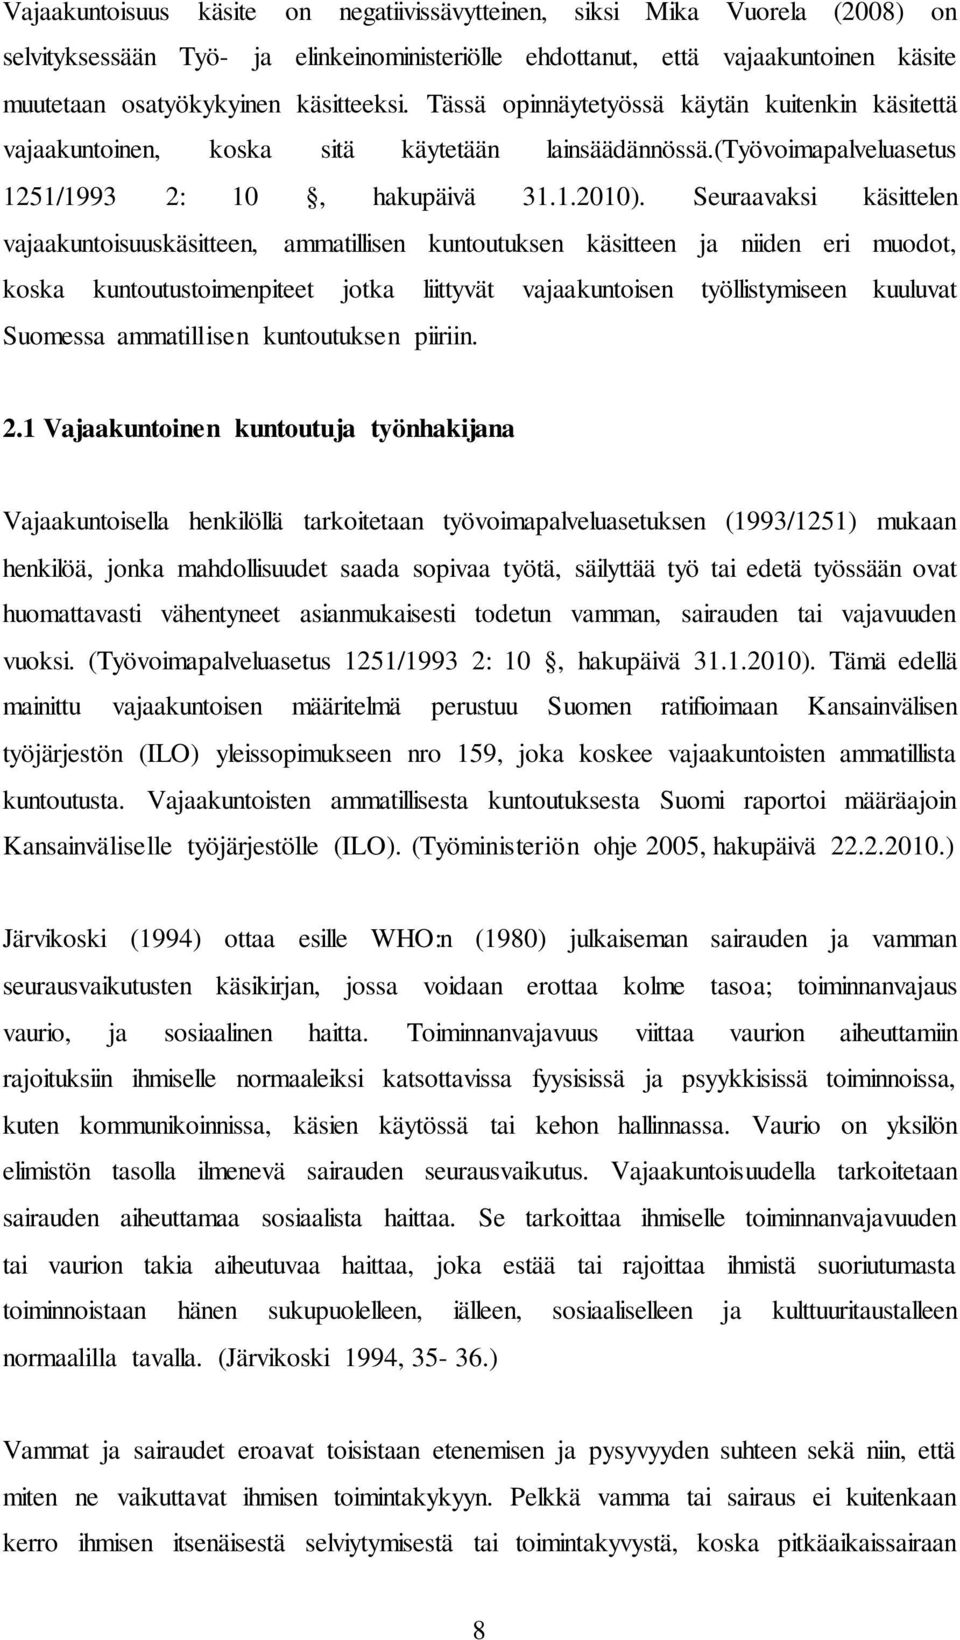 Seuraavaksi käsittelen vajaakuntoisuuskäsitteen, ammatillisen kuntoutuksen käsitteen ja niiden eri muodot, koska kuntoutustoimenpiteet jotka liittyvät vajaakuntoisen työllistymiseen kuuluvat Suomessa